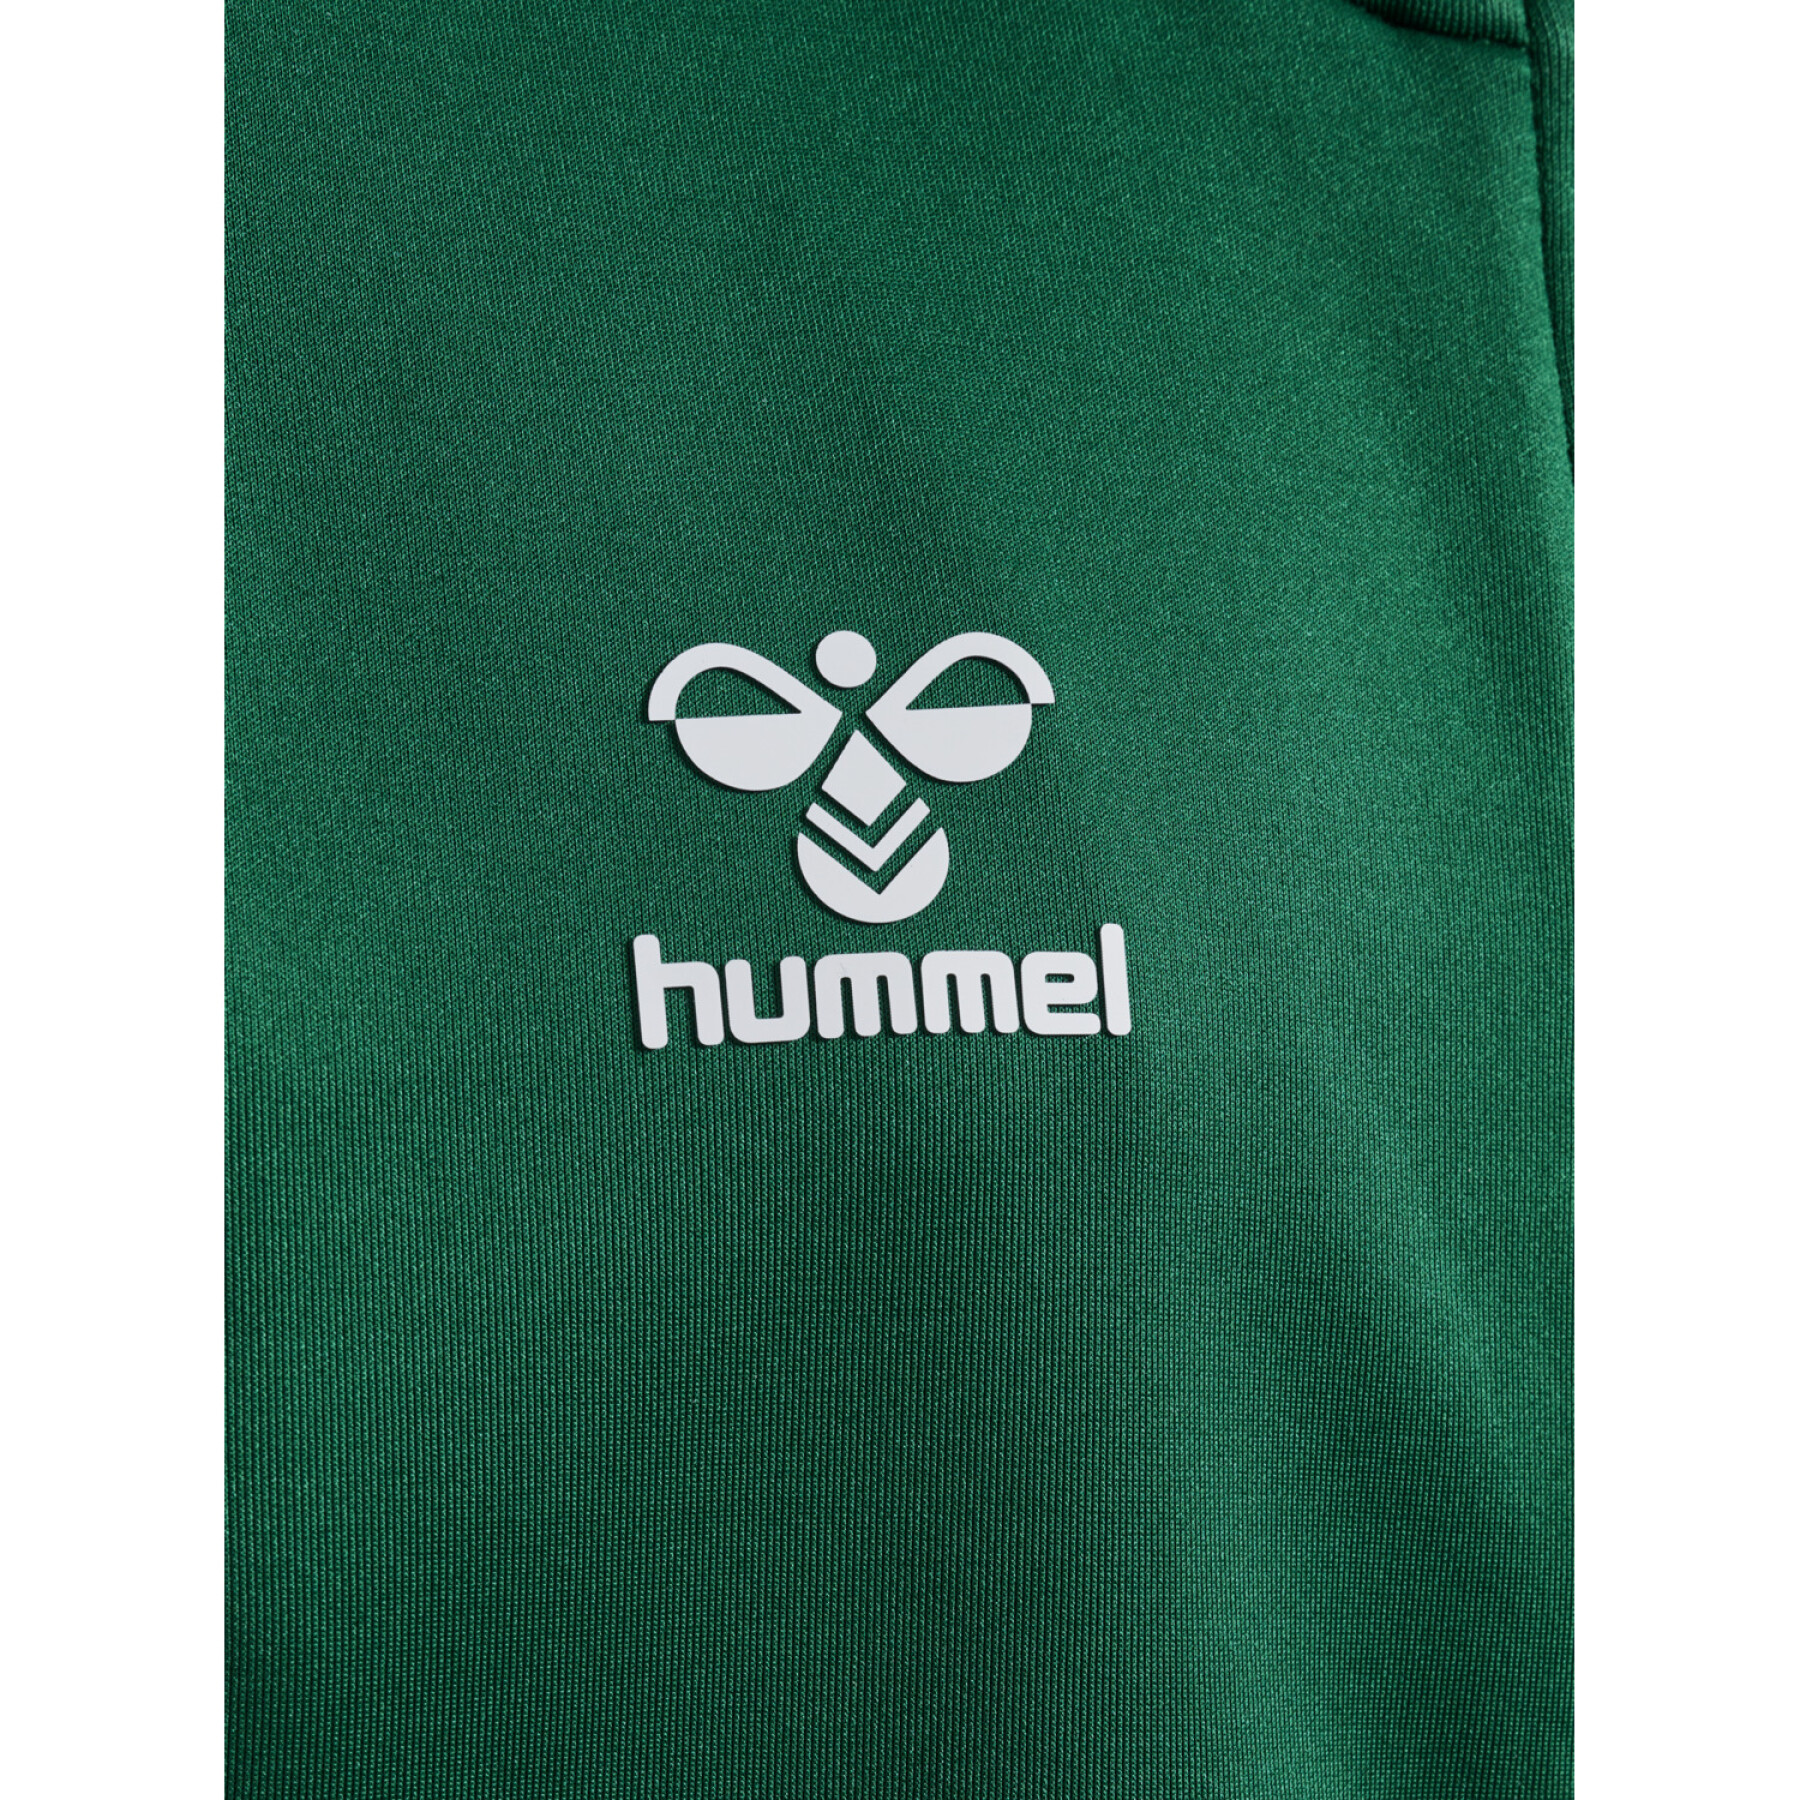 Giacca della tuta da ginnastica per bambini Hummel Core Xk